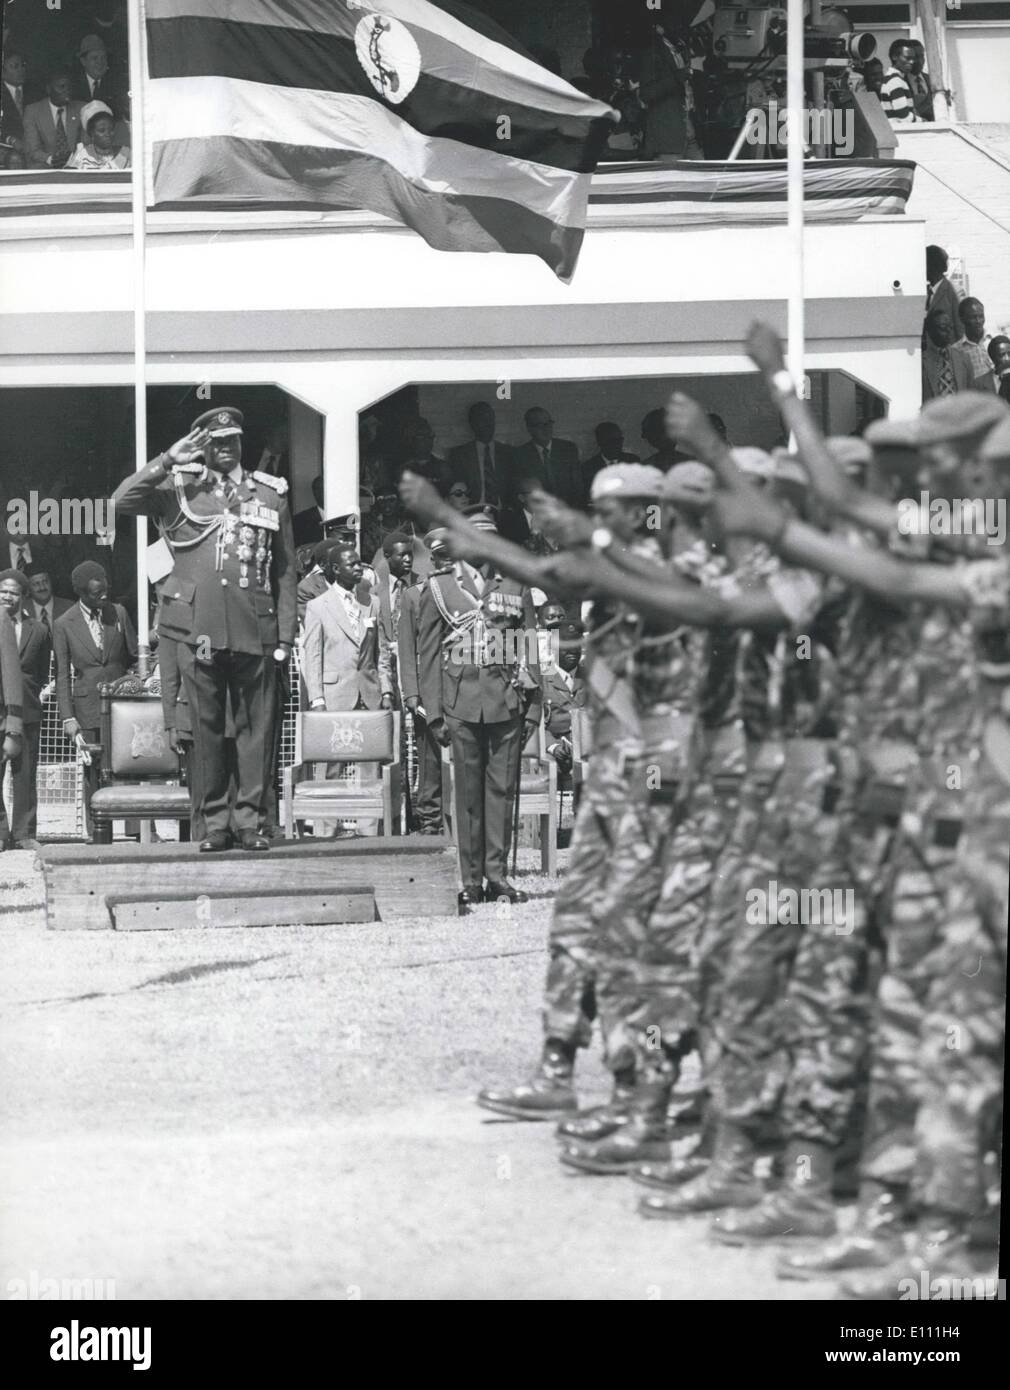 01 janvier 1975, Idi Amin Dada - 4e anniv. : Le Président Amin reçoit le salut d'un détachement de parachutistes. Banque D'Images